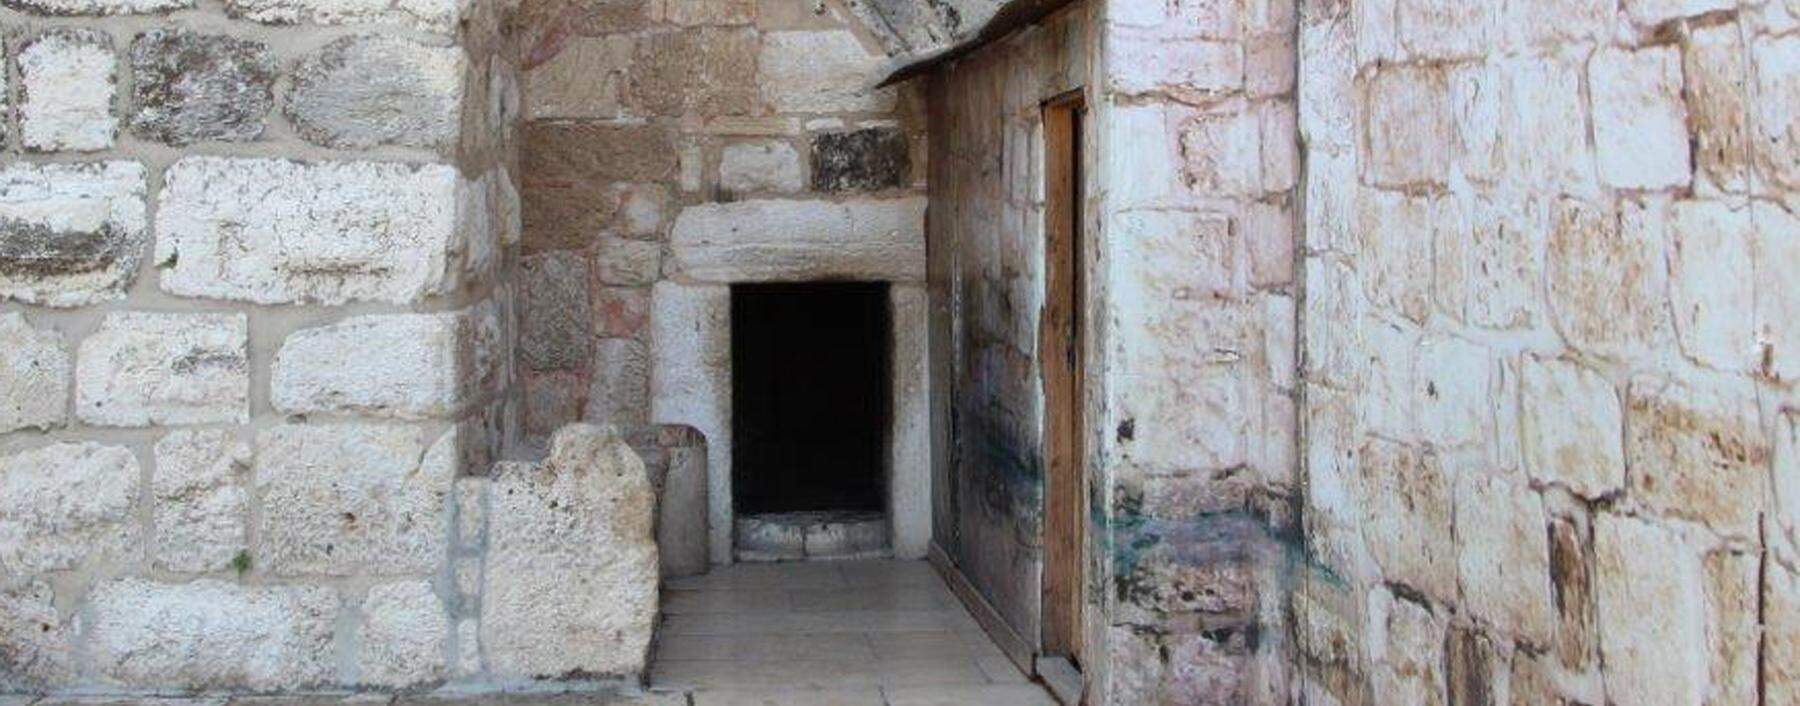 Eingang zur Geburtskirche in Bethlehem, errichtet vor 335 n. Chr. unter Kaiser Konstantin, angeblich an der Stelle eines von Kaiser Hadrian errichteten Adonis-Heiligtums.